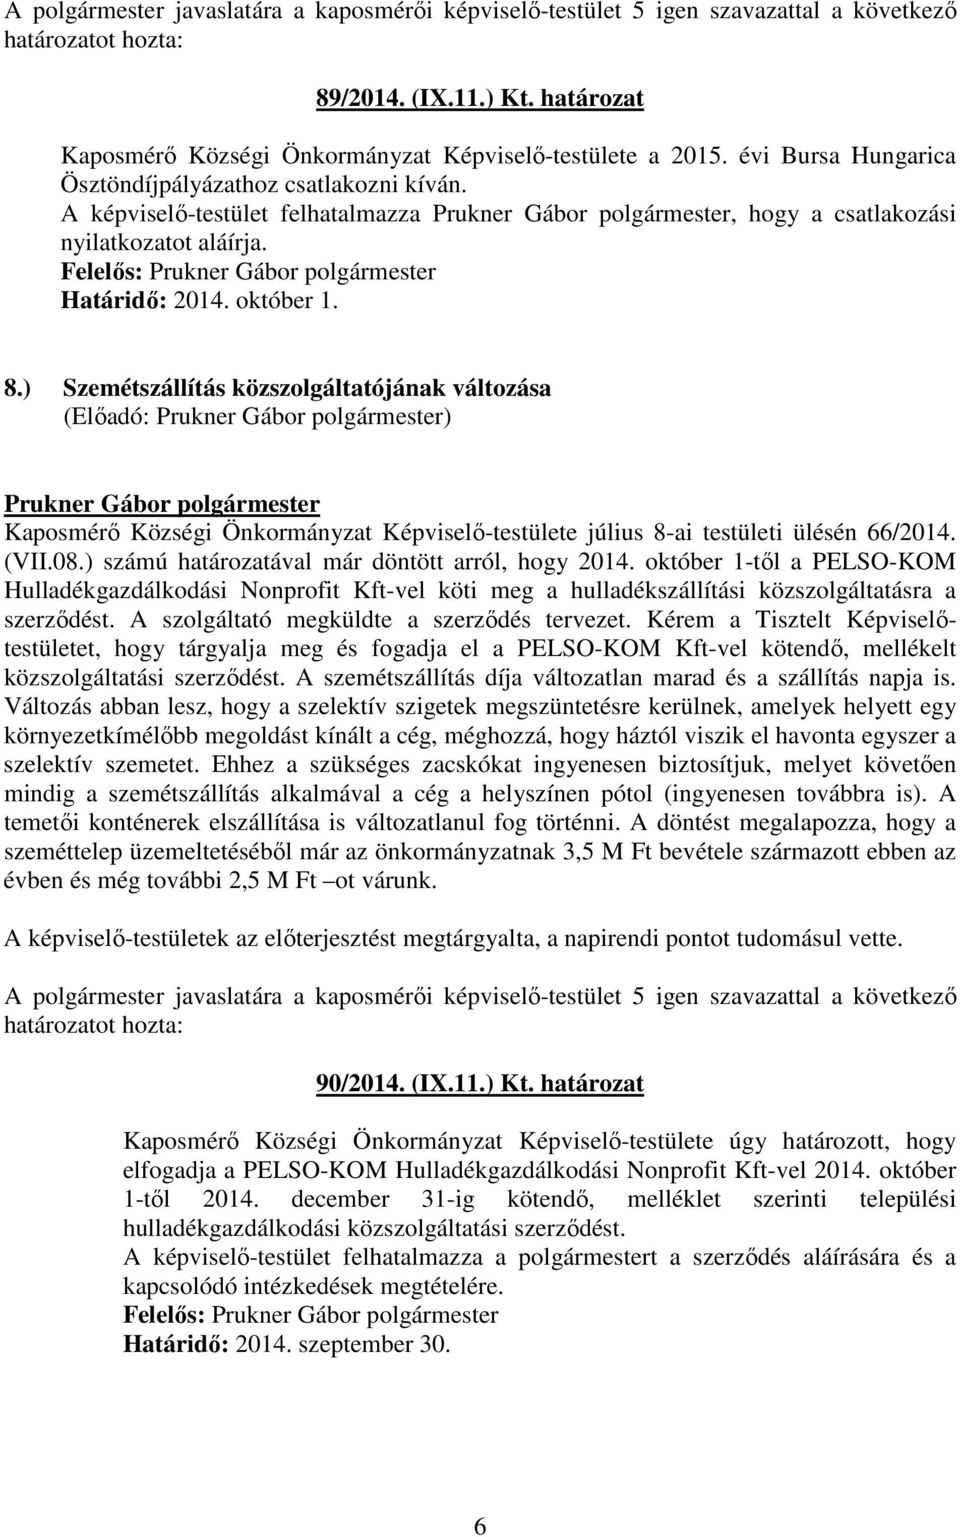 ) Szemétszállítás közszolgáltatójának változása Kaposmérı Községi Önkormányzat Képviselı-testülete július 8-ai testületi ülésén 66/2014. (VII.08.) számú határozatával már döntött arról, hogy 2014.